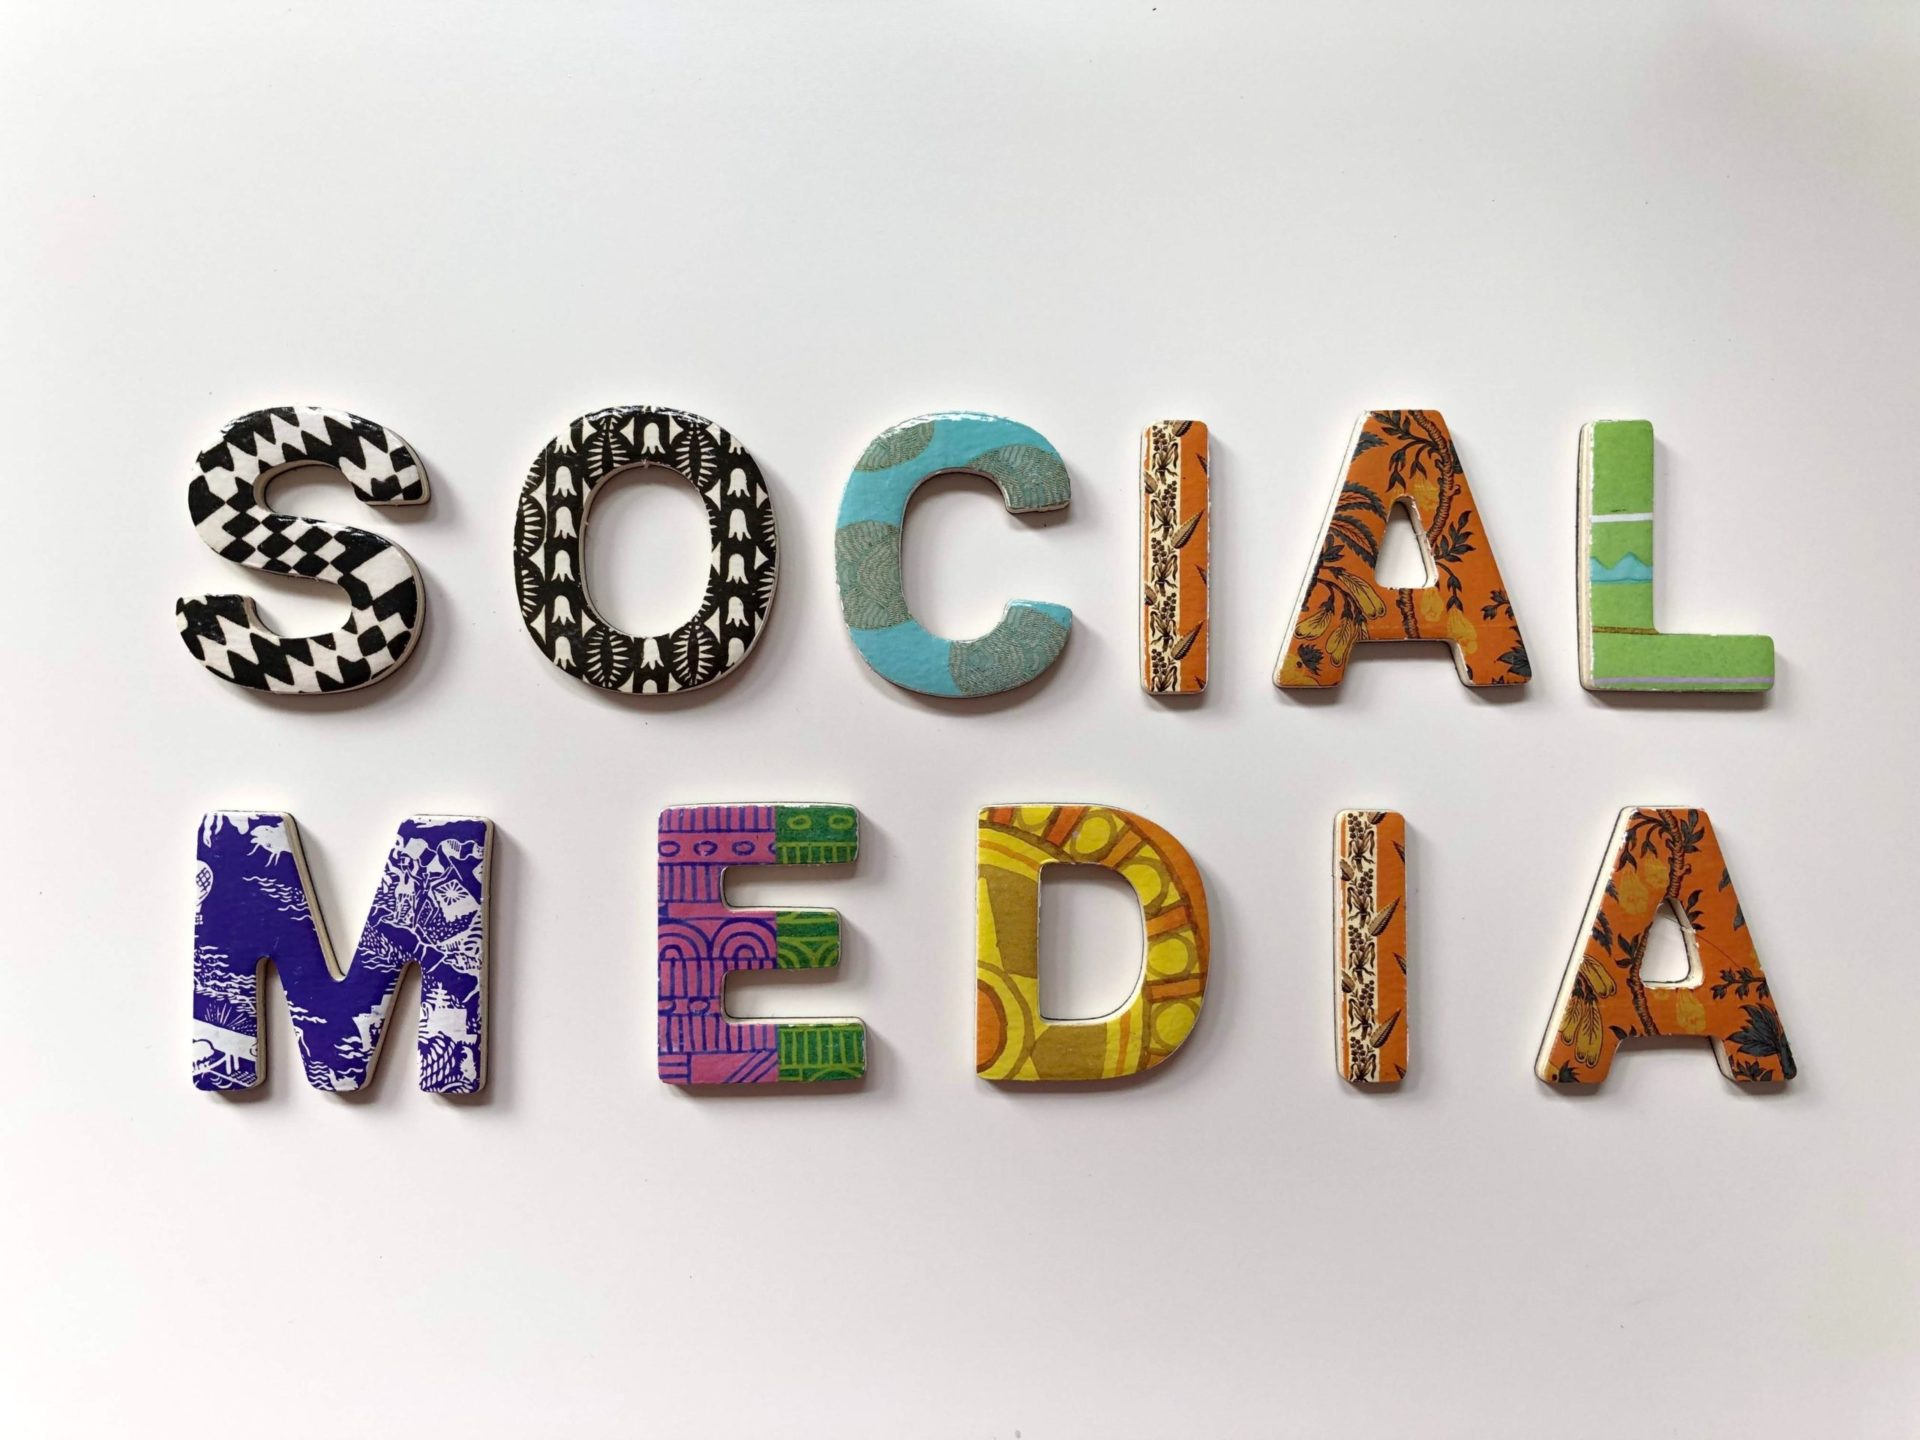 Social media : comment créer une stratégie efficace sur les réseaux sociaux ?